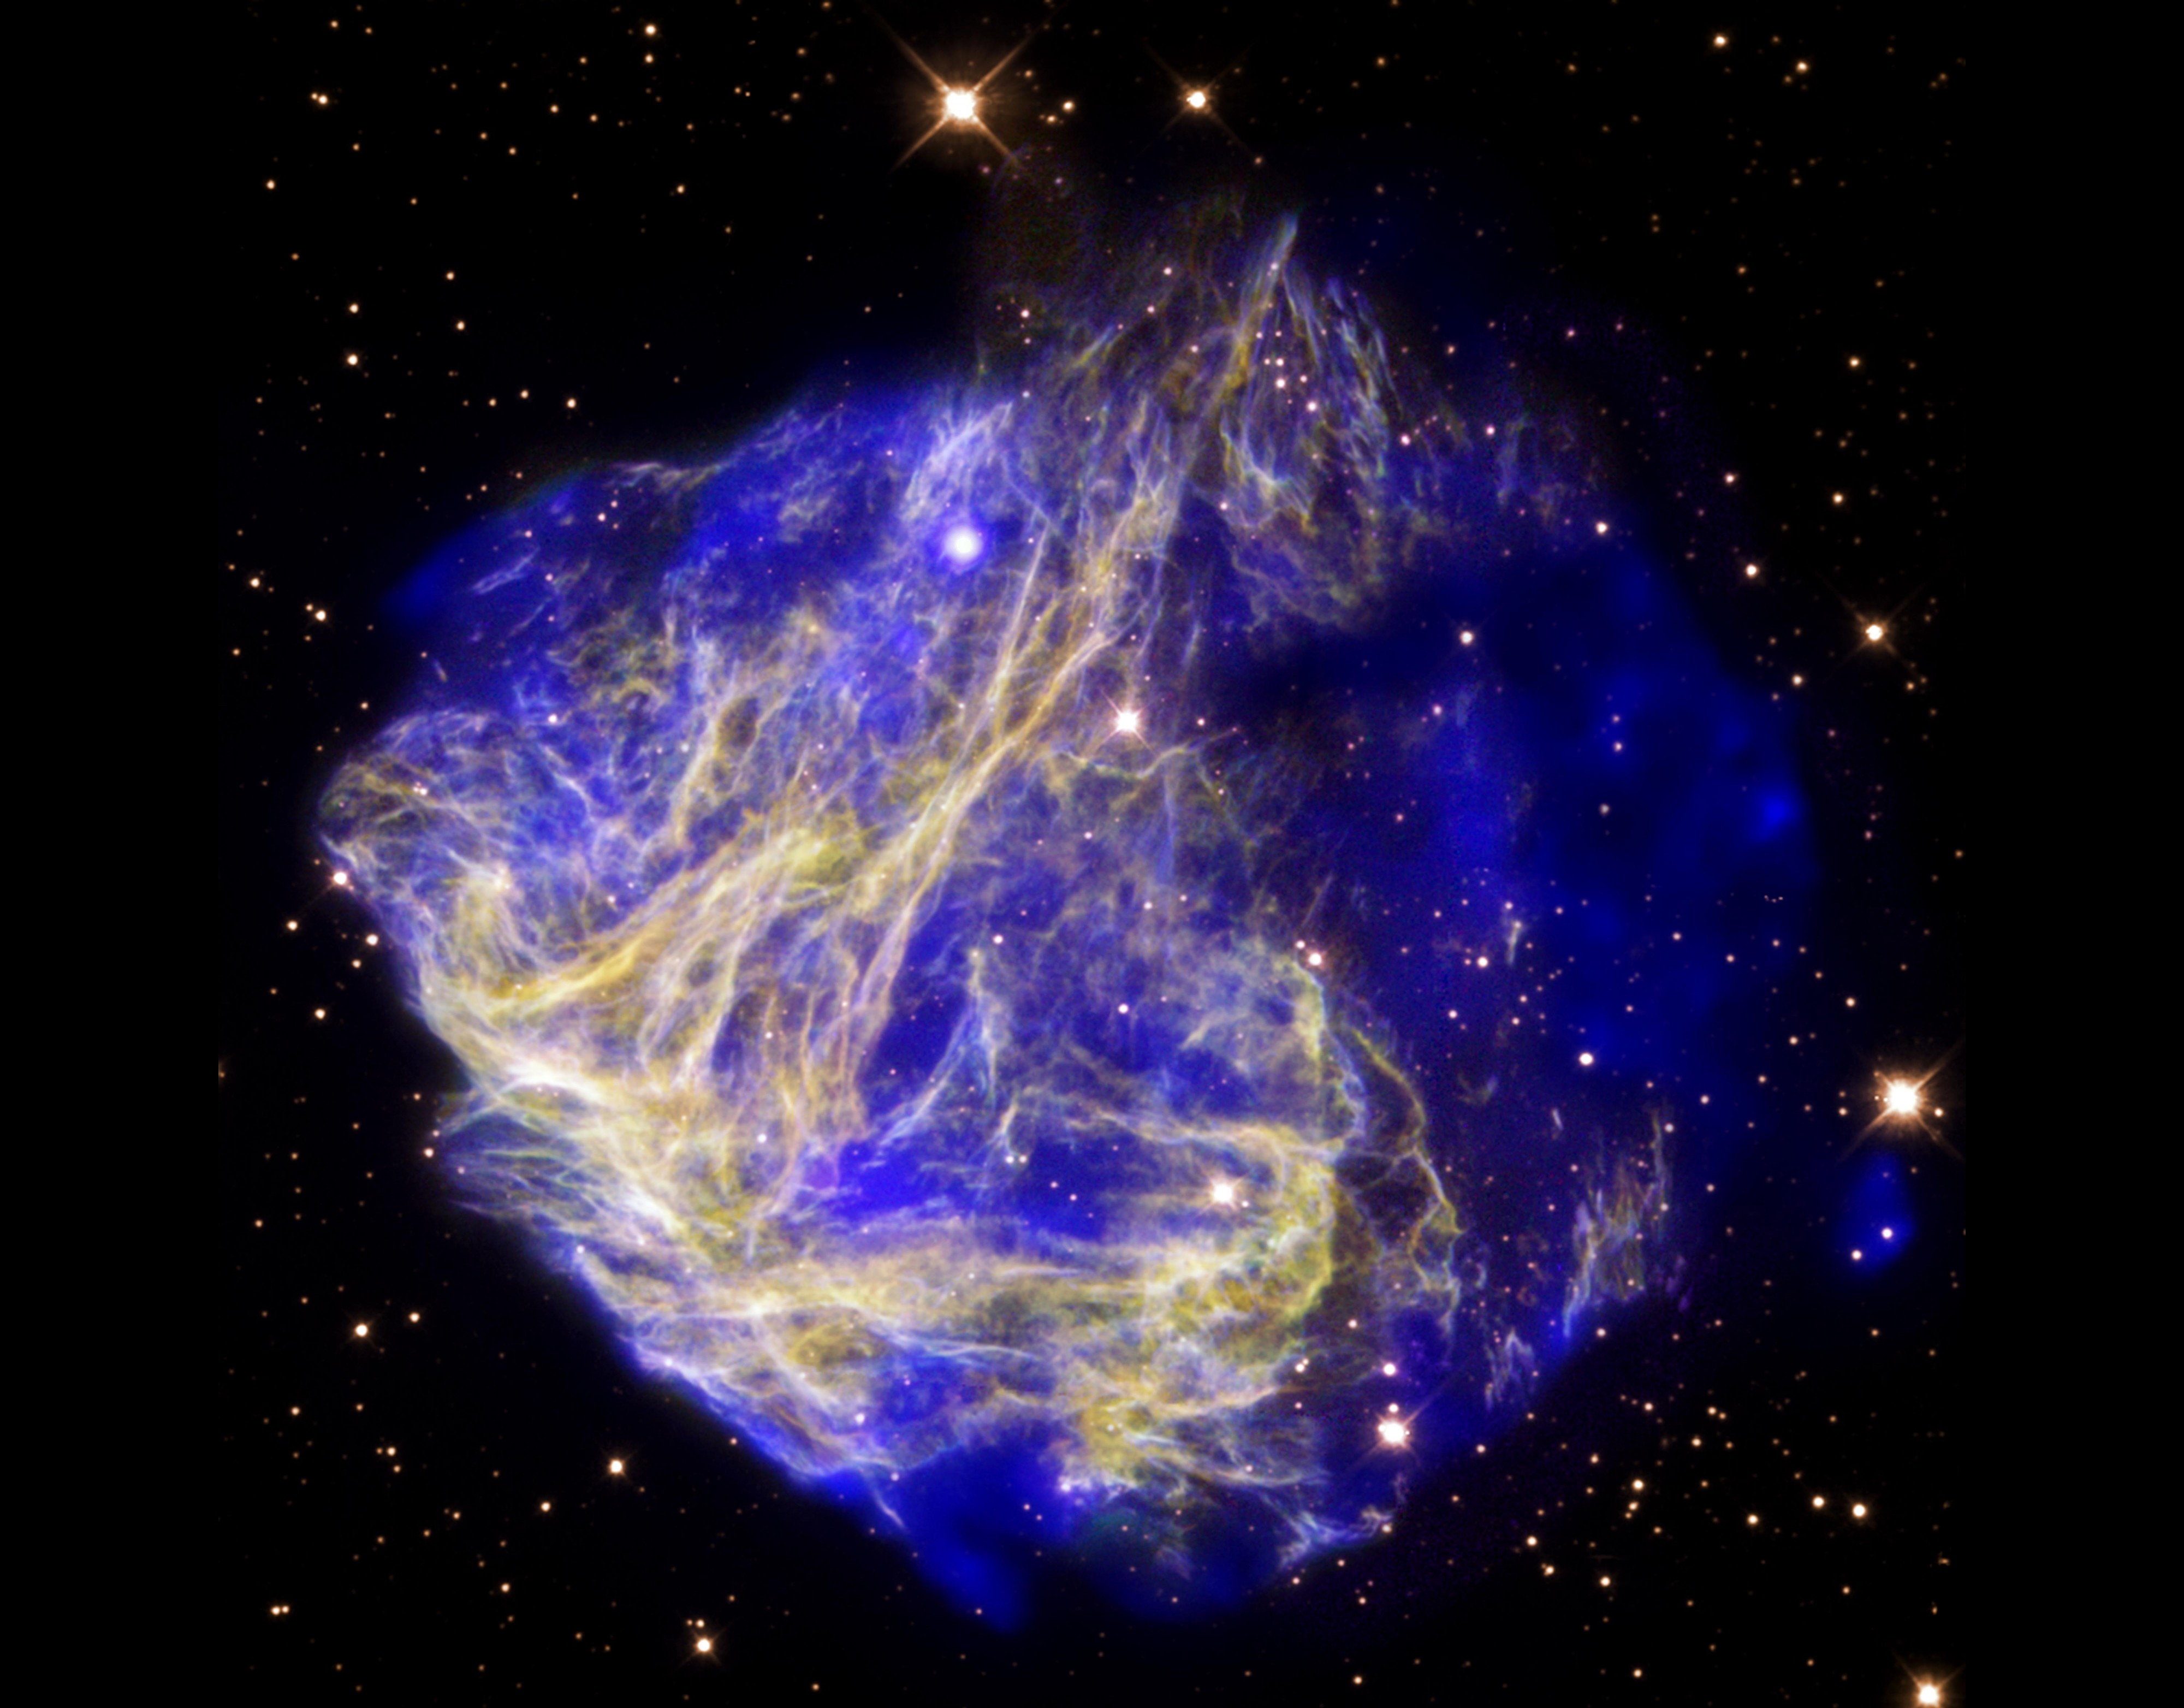 N49 (Chandra)